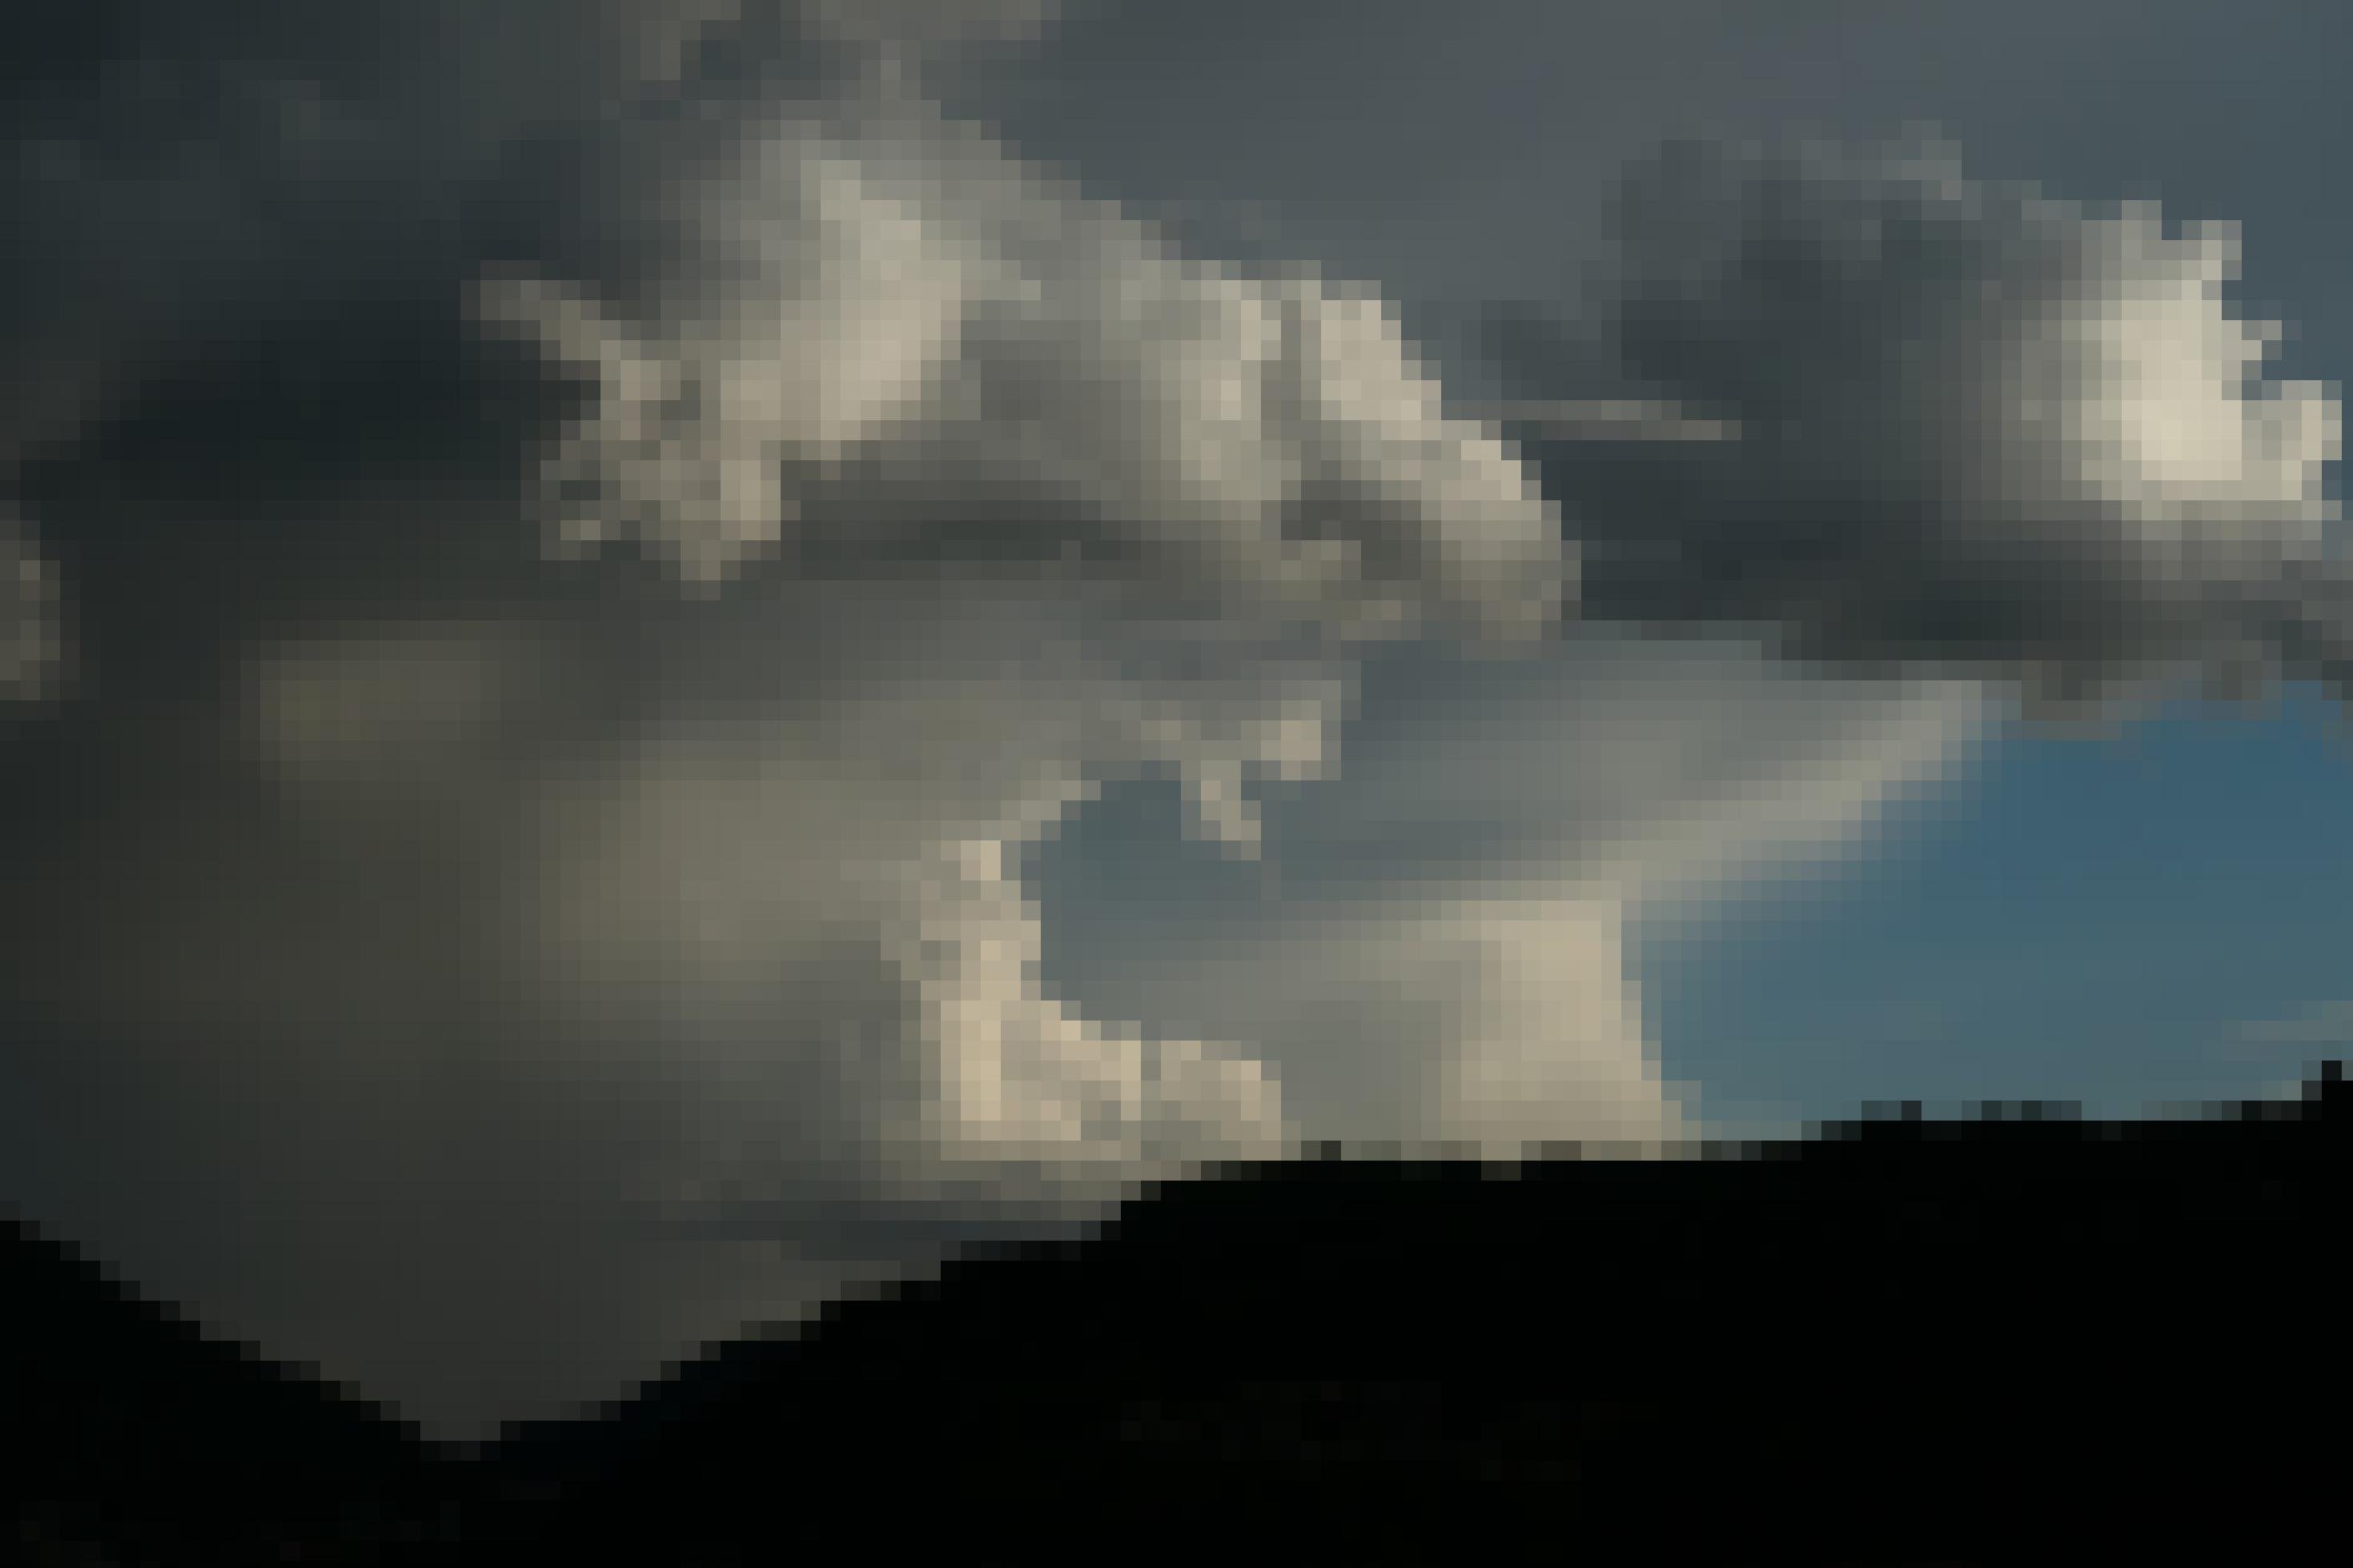 Über der Silhouette einer Bergkette türmen sich mächtige Wolkenformationen, links düster und grau, rechts heller und ein Stück Himmel frei lassend. In der Mitte erinnern die Wolken ein wenig an ein riesiges Maul, das den freundlichen blauen Himmel rechts zu verschlingen droht.